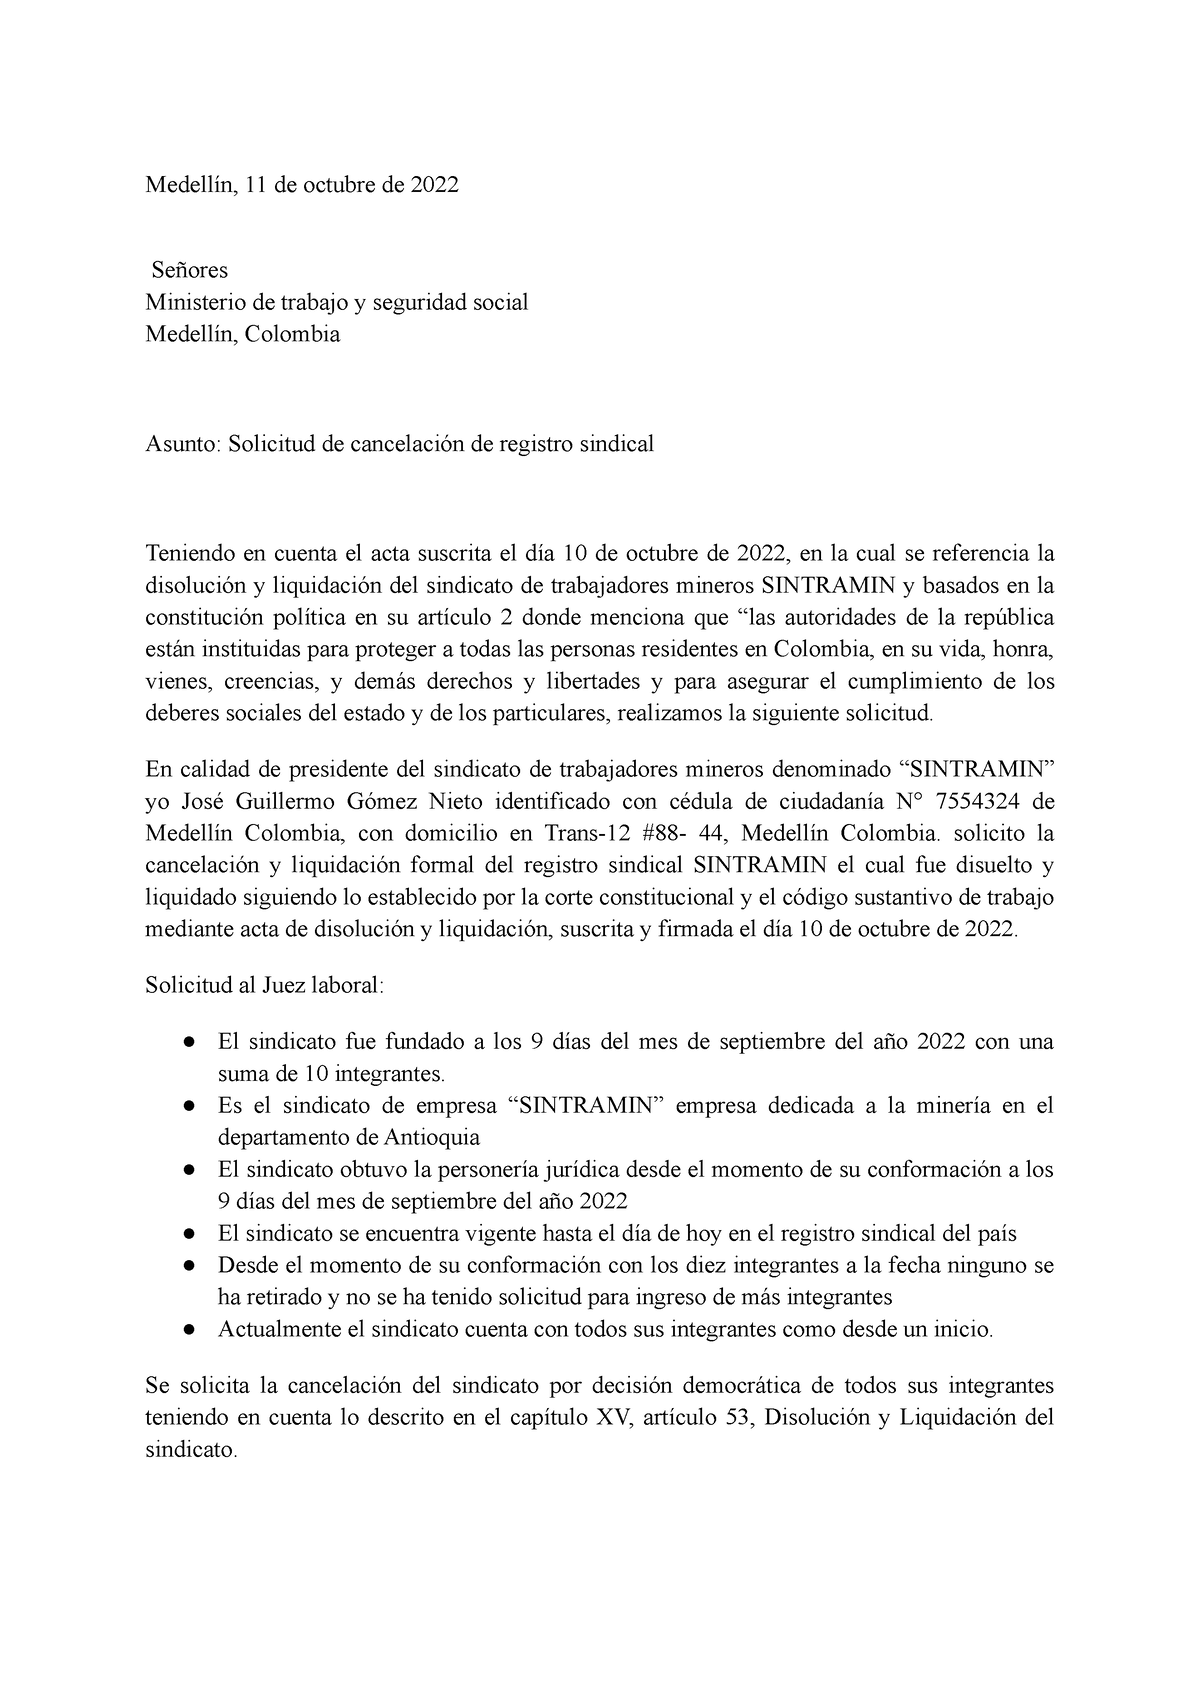 Solicitud De Cancelacion Sindical Medellín 11 De Octubre De 2022